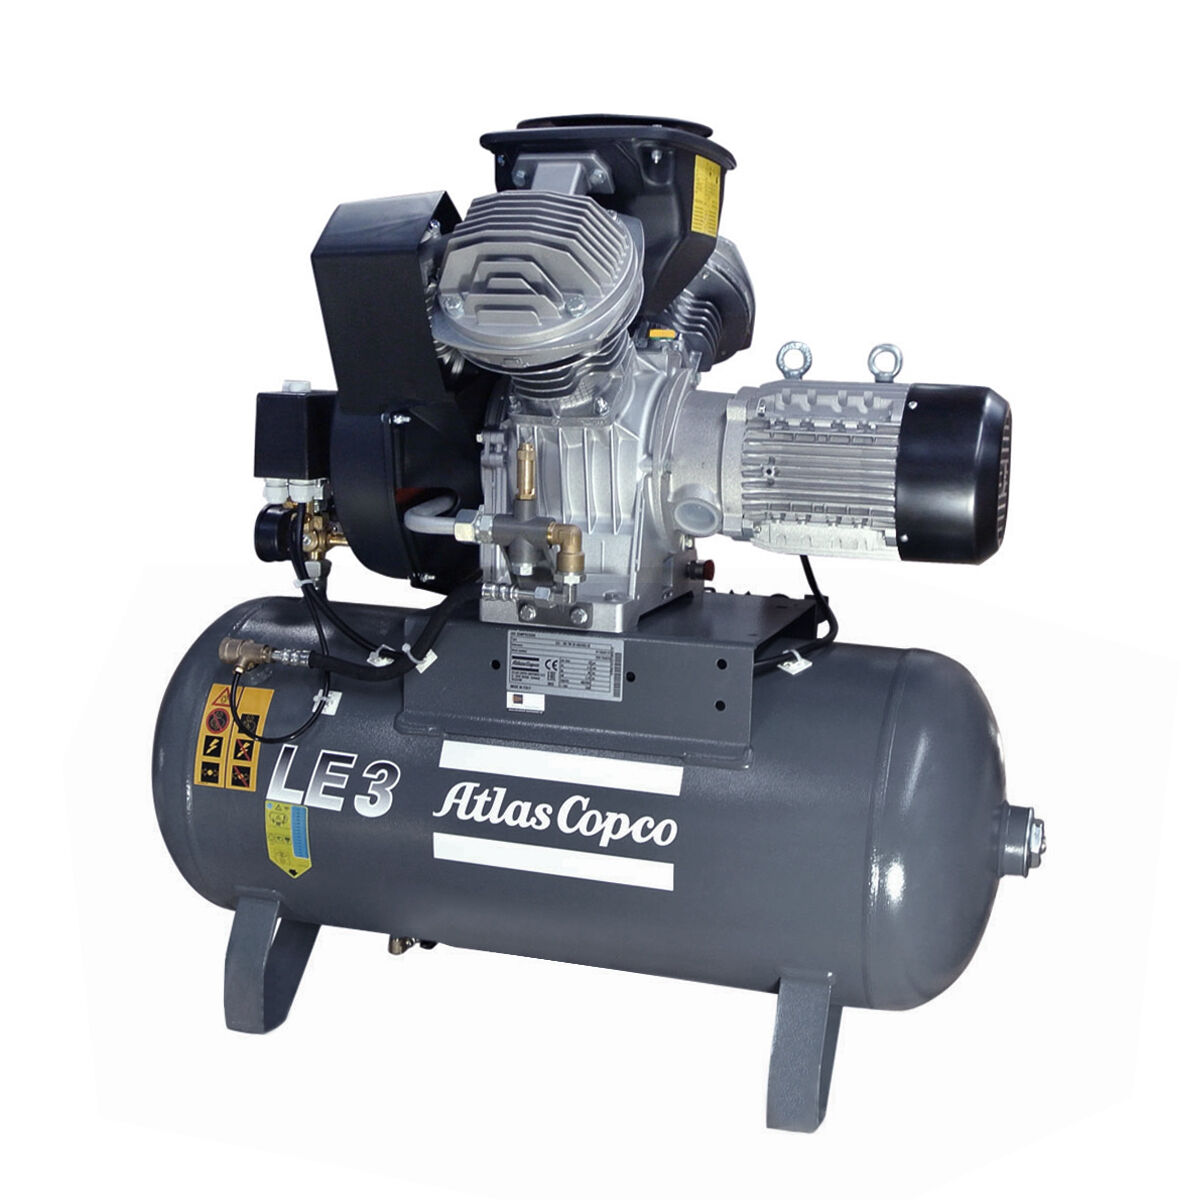 Atlas Copco Kolbenkompressor LE 3 - 10 S bar TM inkl. Behälter 90 L | Aussteller